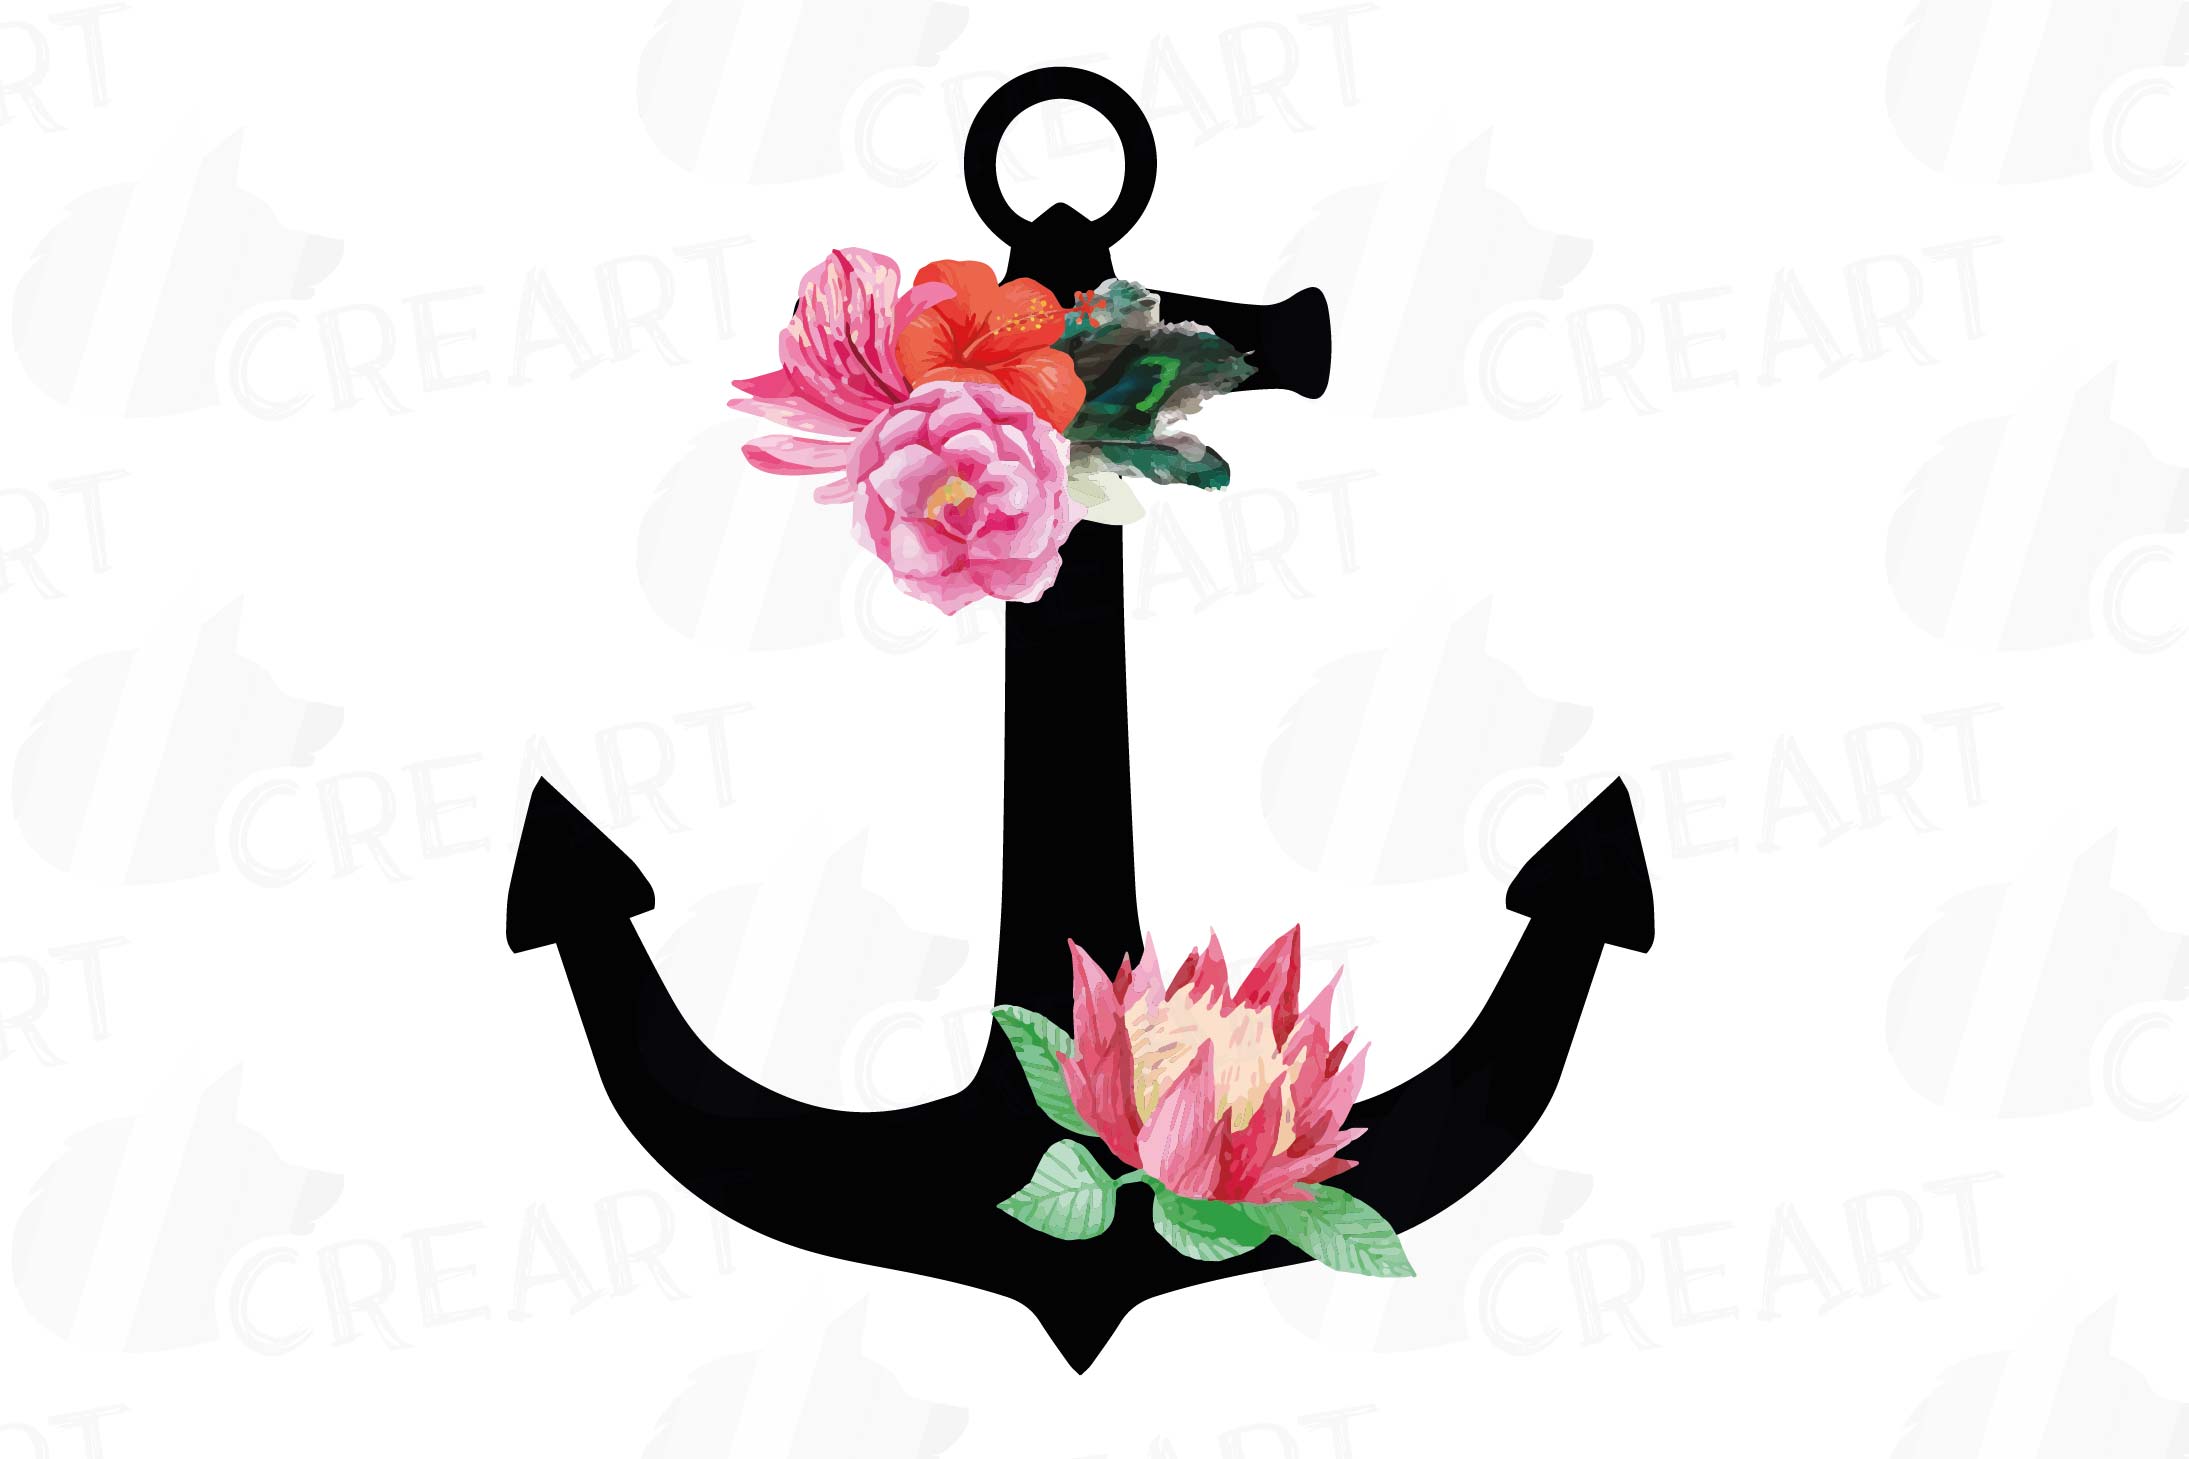 Floral anchor clip art collection, watercolor floral anchor,